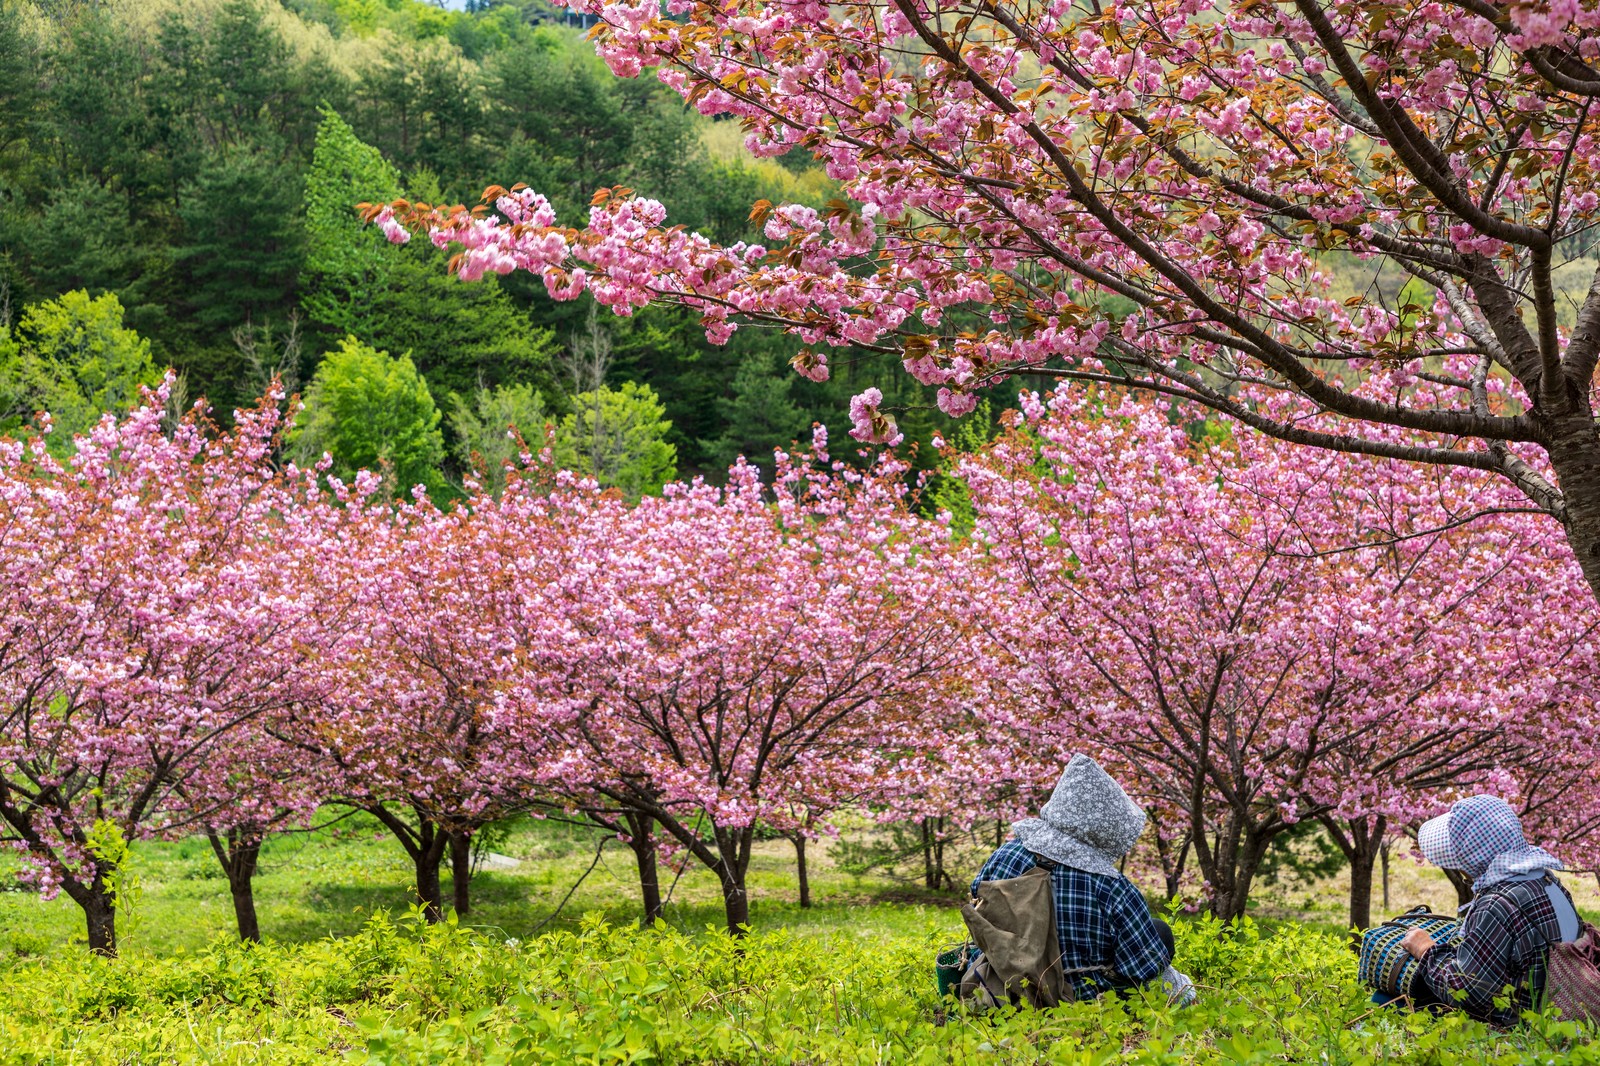 年沖縄与儀公園の桜開花状況や駐車場を調査 なはさくらまつりの開催日程まとめ Suguri Journal